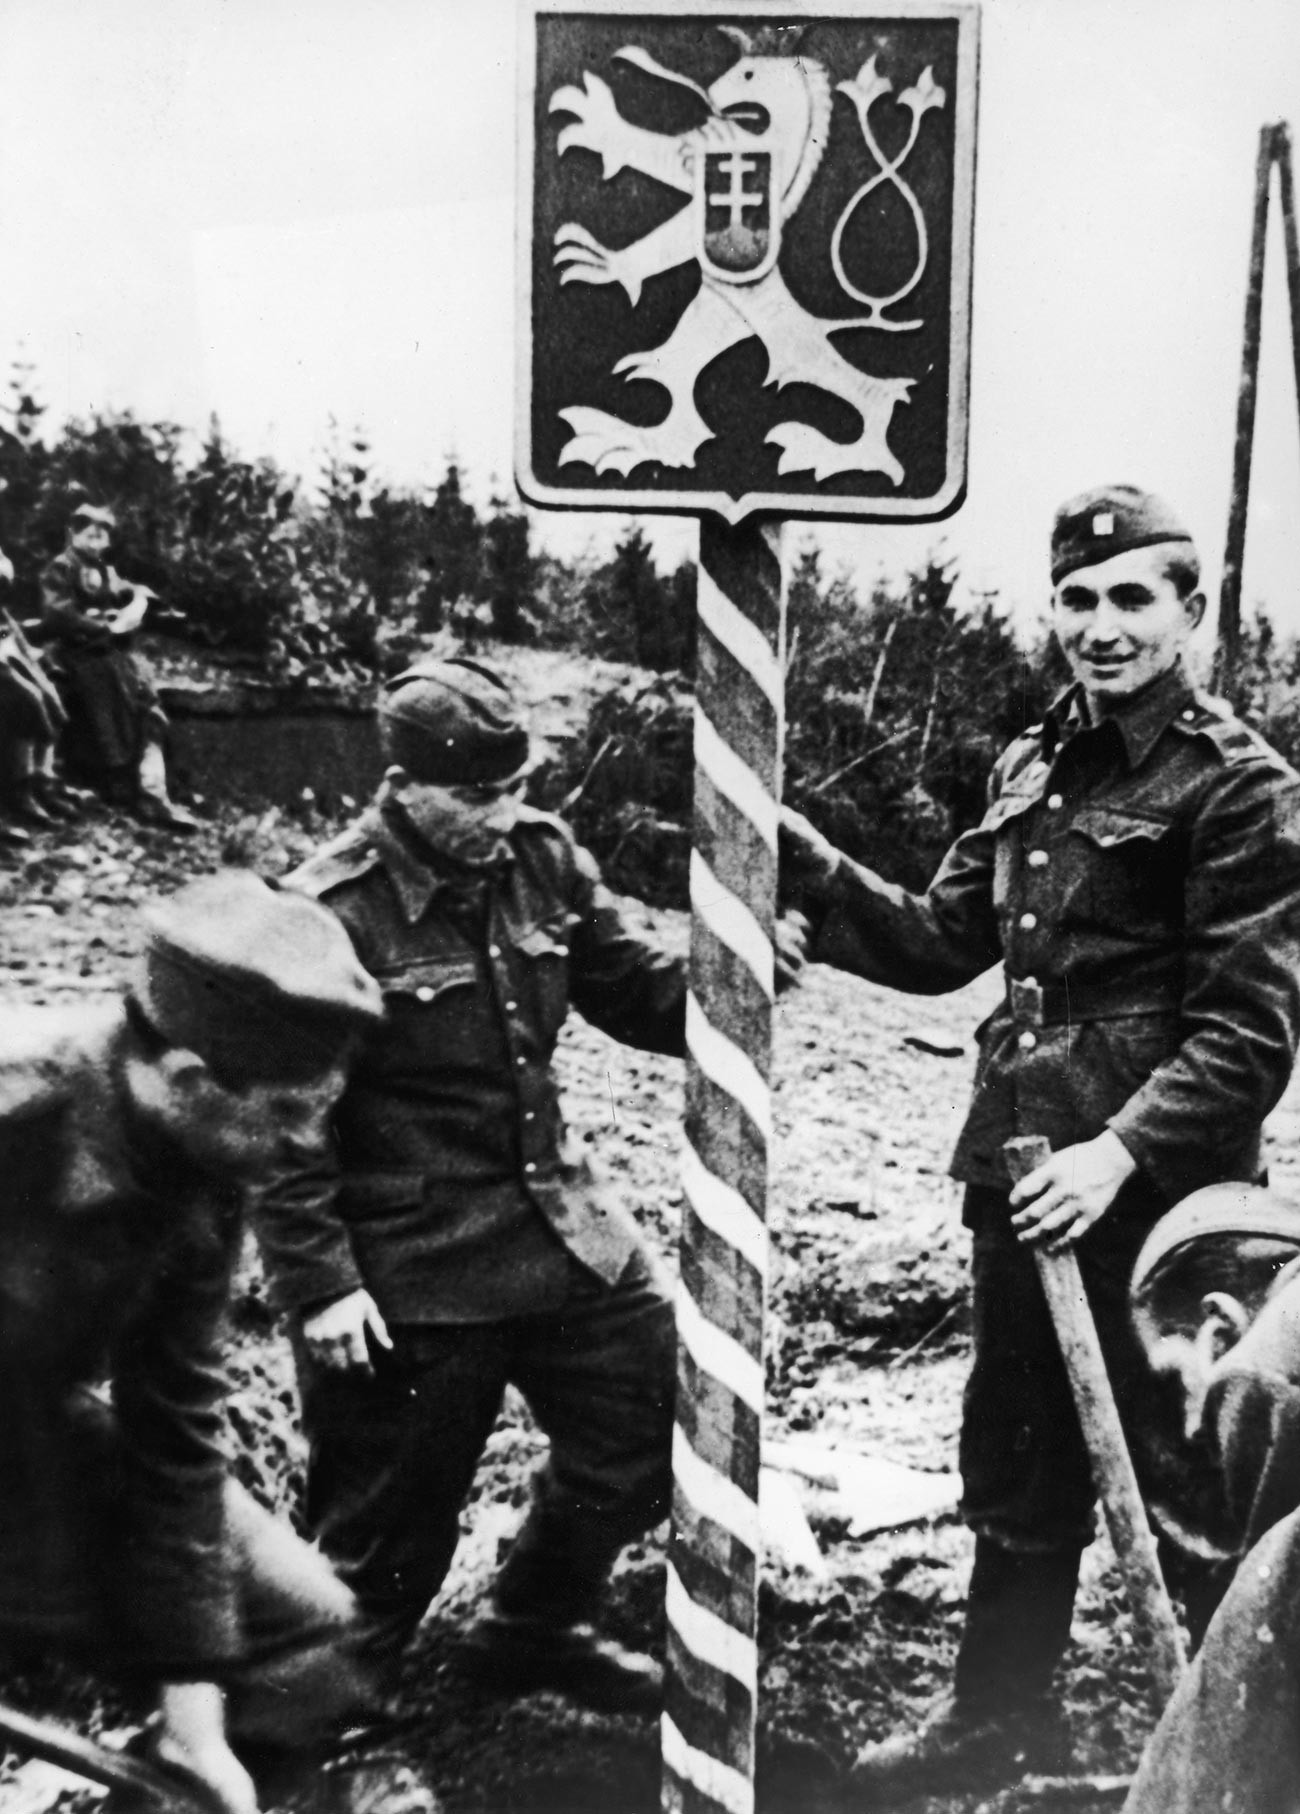 Am 13. Dezember 1944 errichteten tschechische Soldaten in sowjetischen Uniformen in einem befreiten Teil ihres Landes einen neuen Grenzposten in der Nähe des Dukla-Passes.
